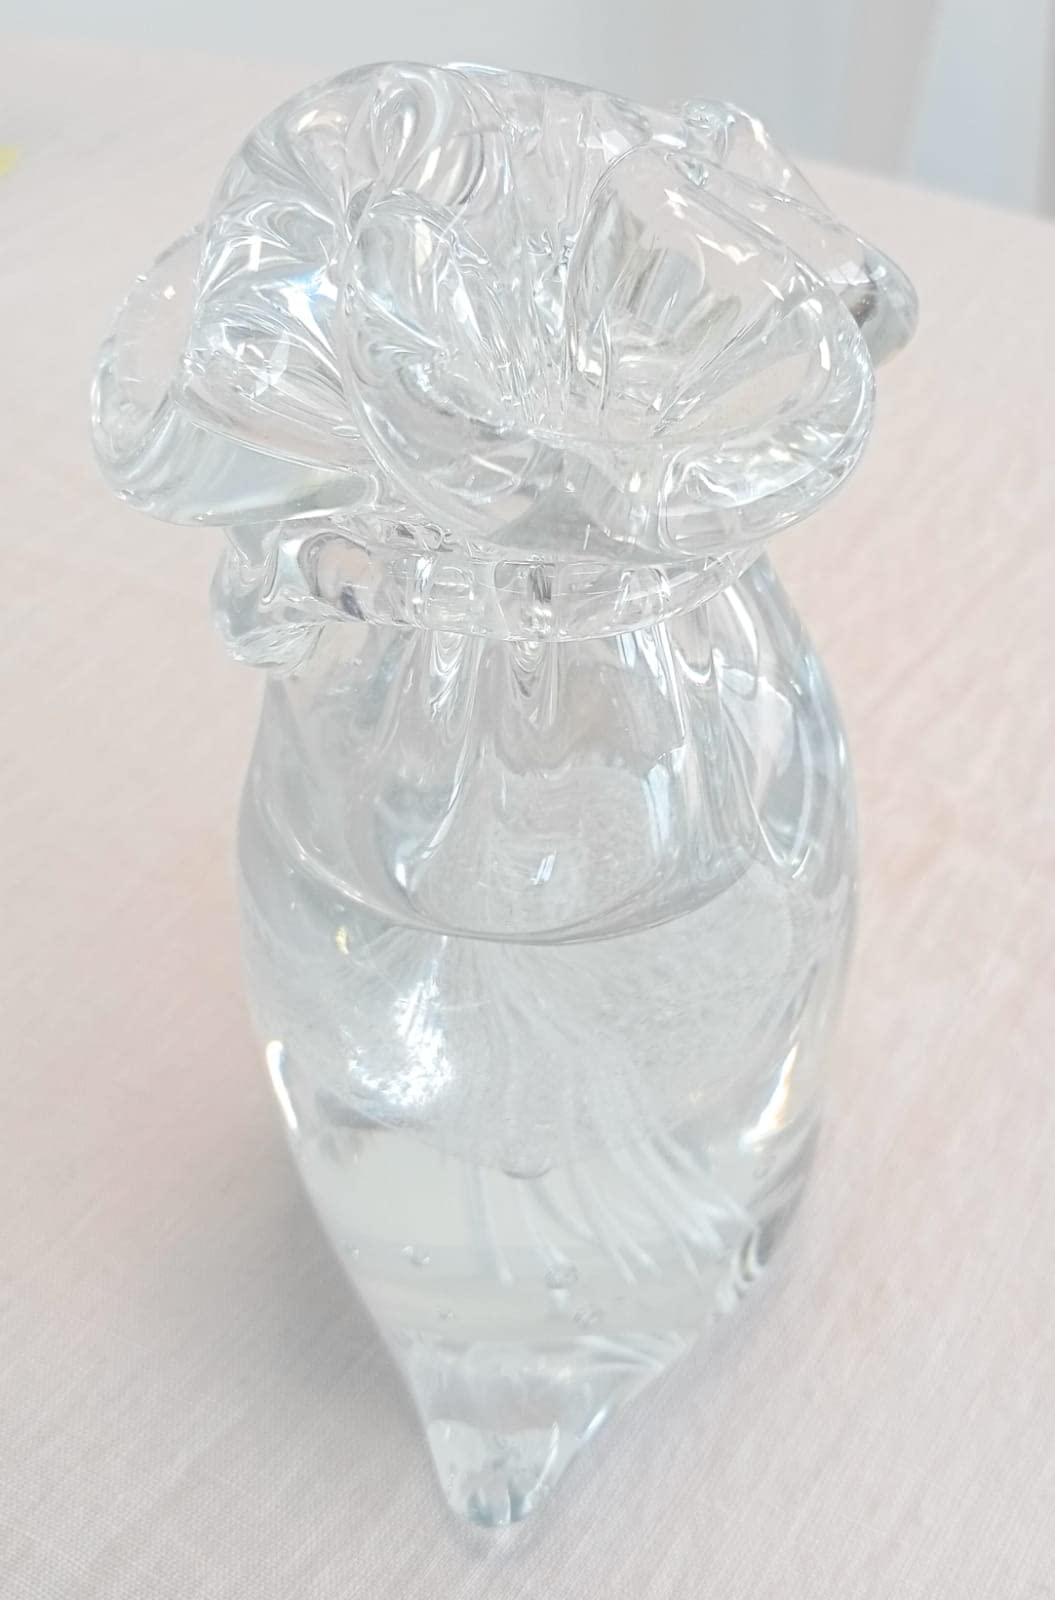 Figurine en verre presse-papier générique en forme de sac contenant des créatures marines (version méduse ou poisson rouge disponible)